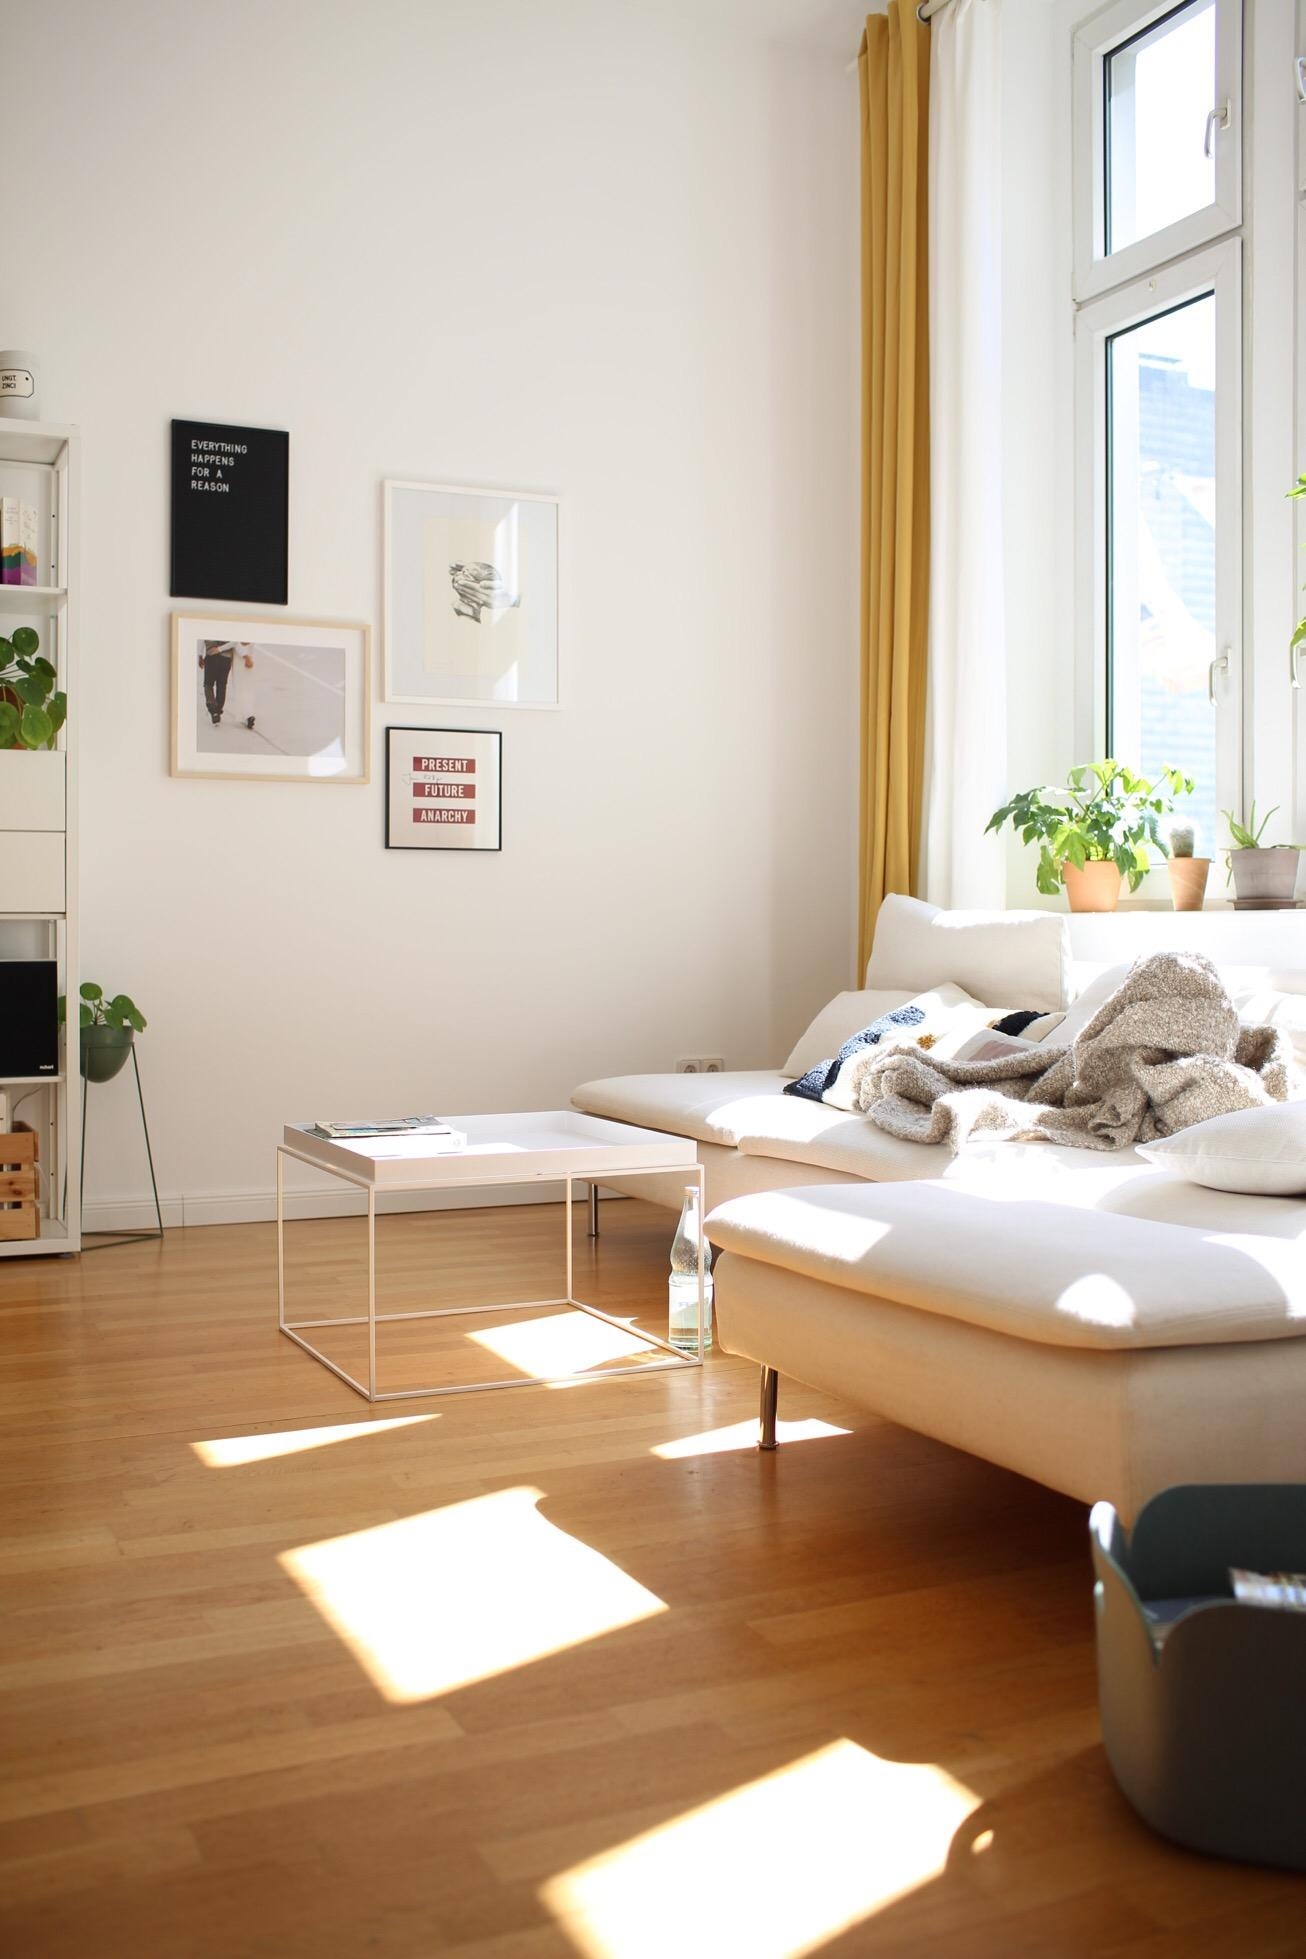 Light lover.
#light #livingroom #couchstyle #altbau #interior 